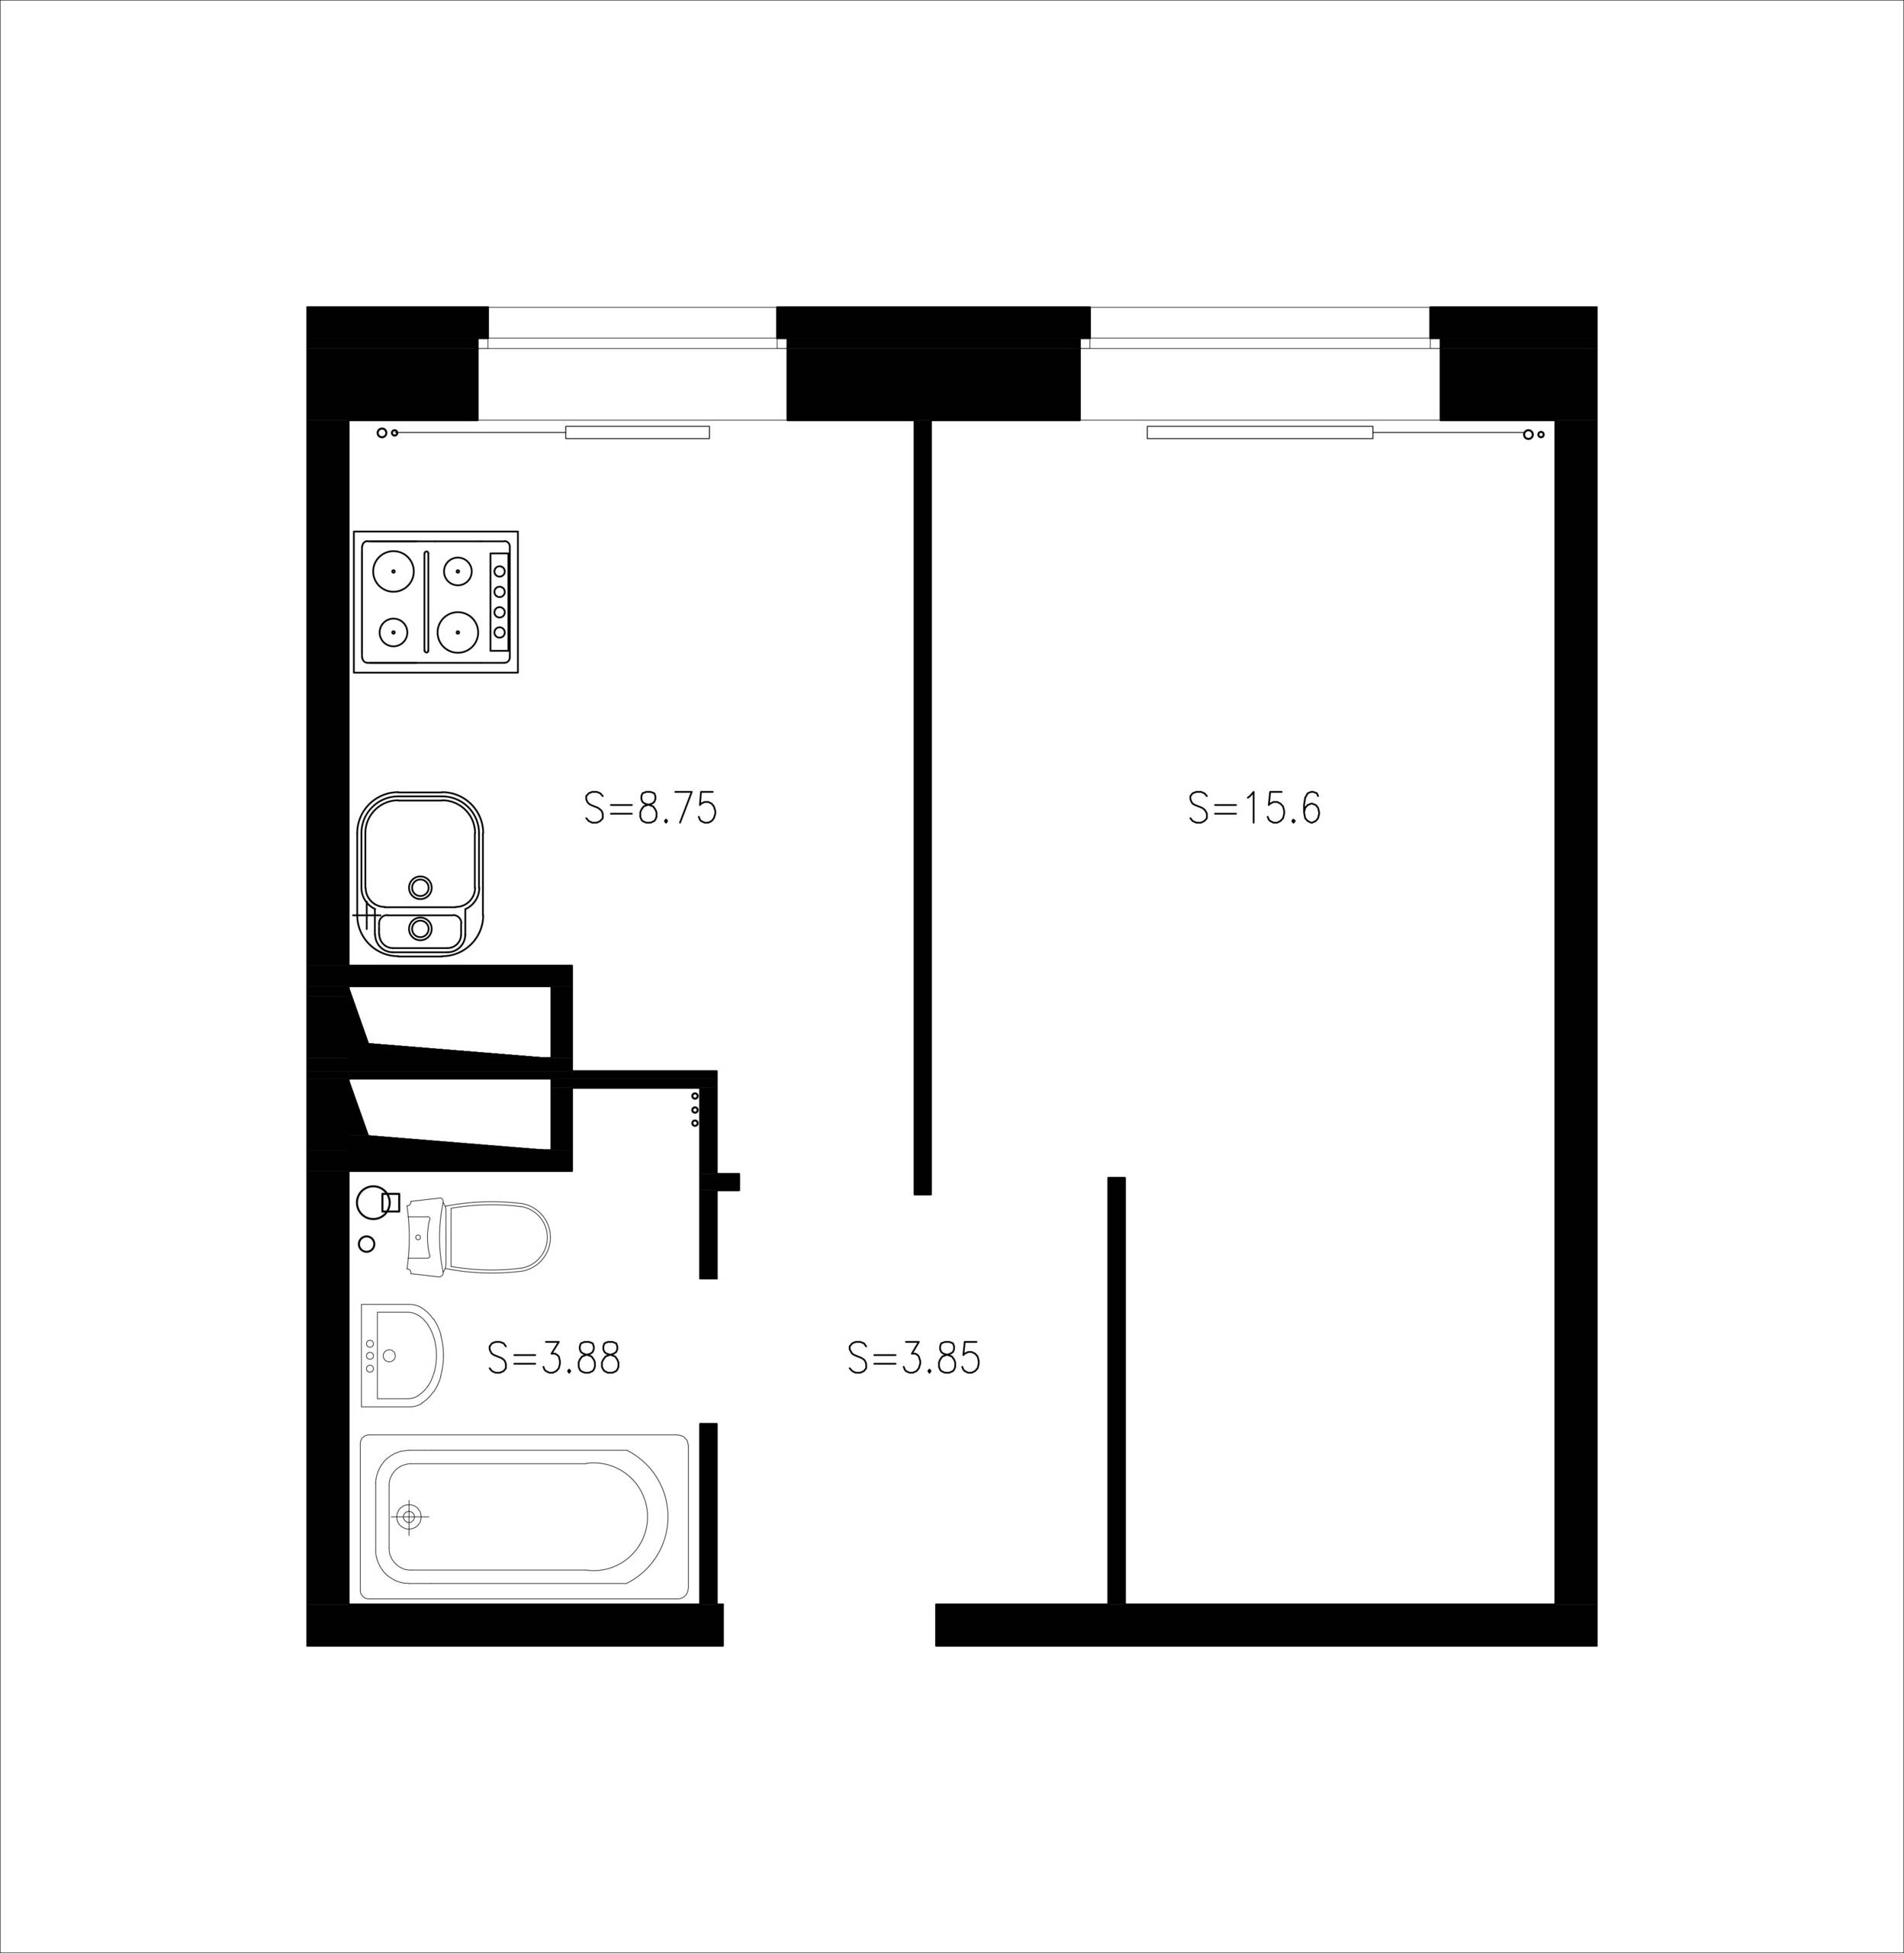 Однокомнатная квартира 33 кв.м: фото дизайна интерьера, варианты планировки